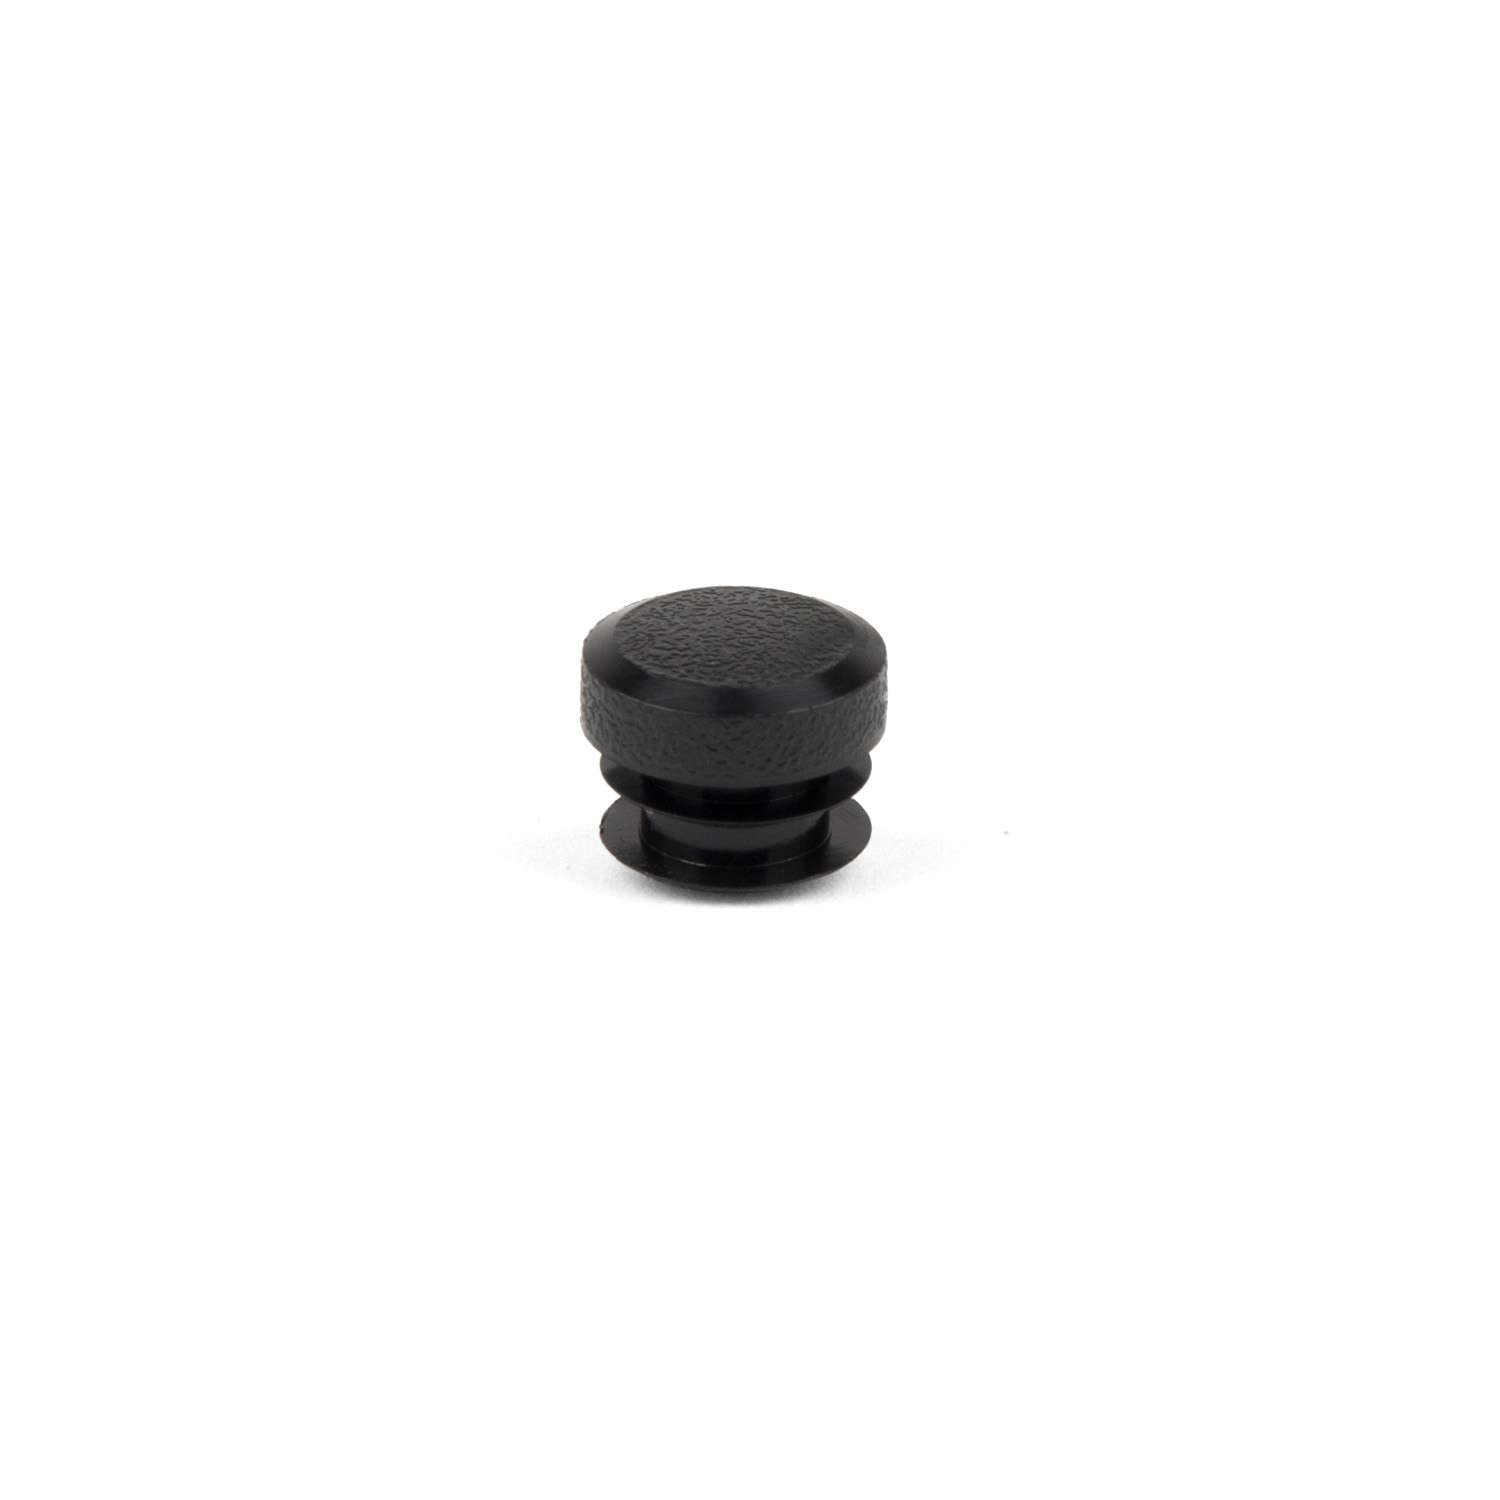 425-048 End cap (1 pcs.) rubber,